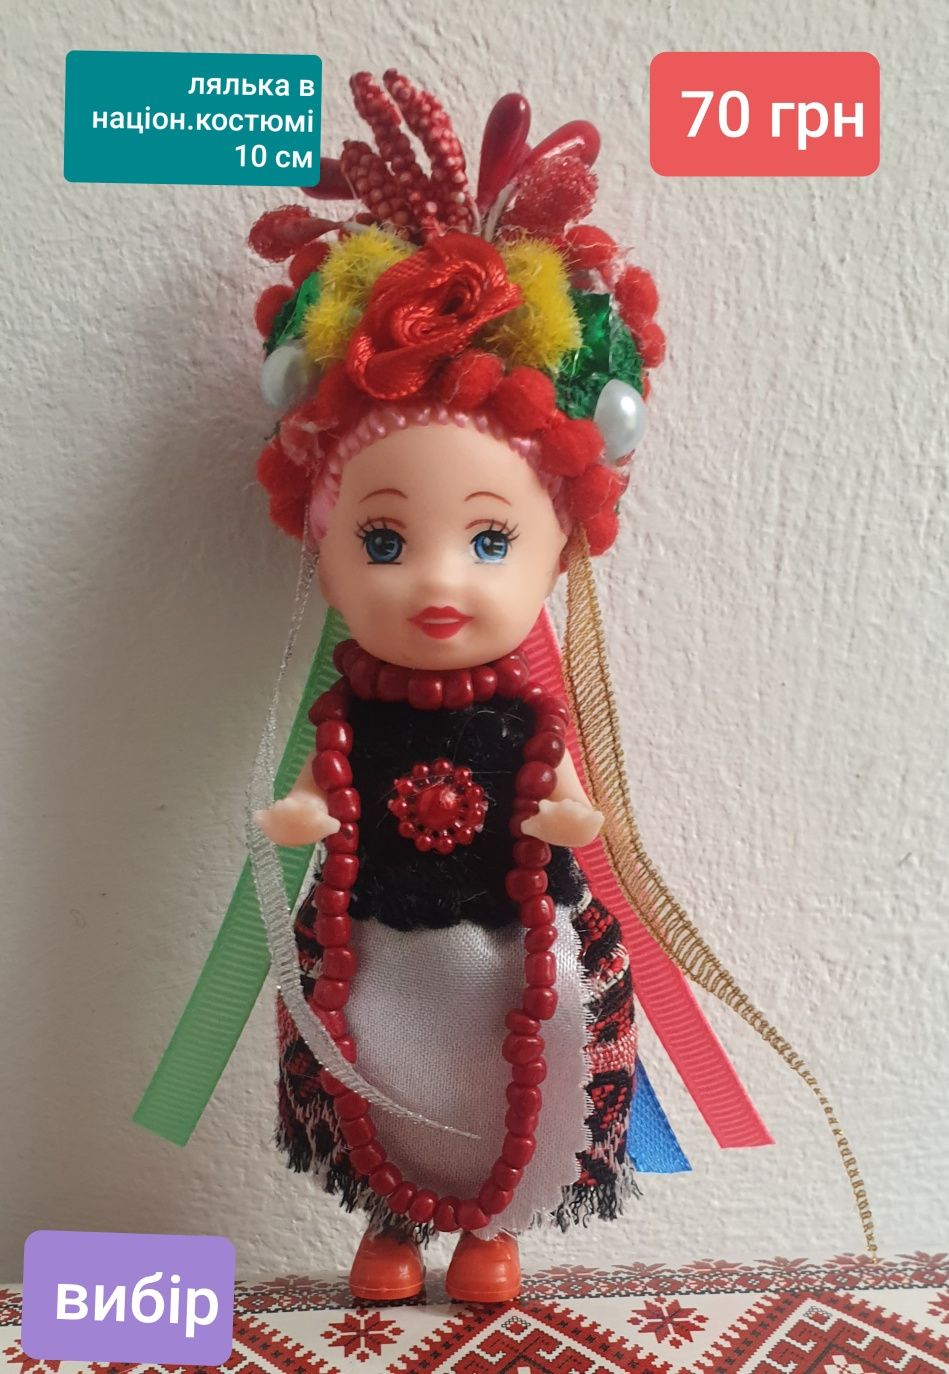 Лялька( 10см) ( іграшка- сувенір- брелок)в національному костюмі